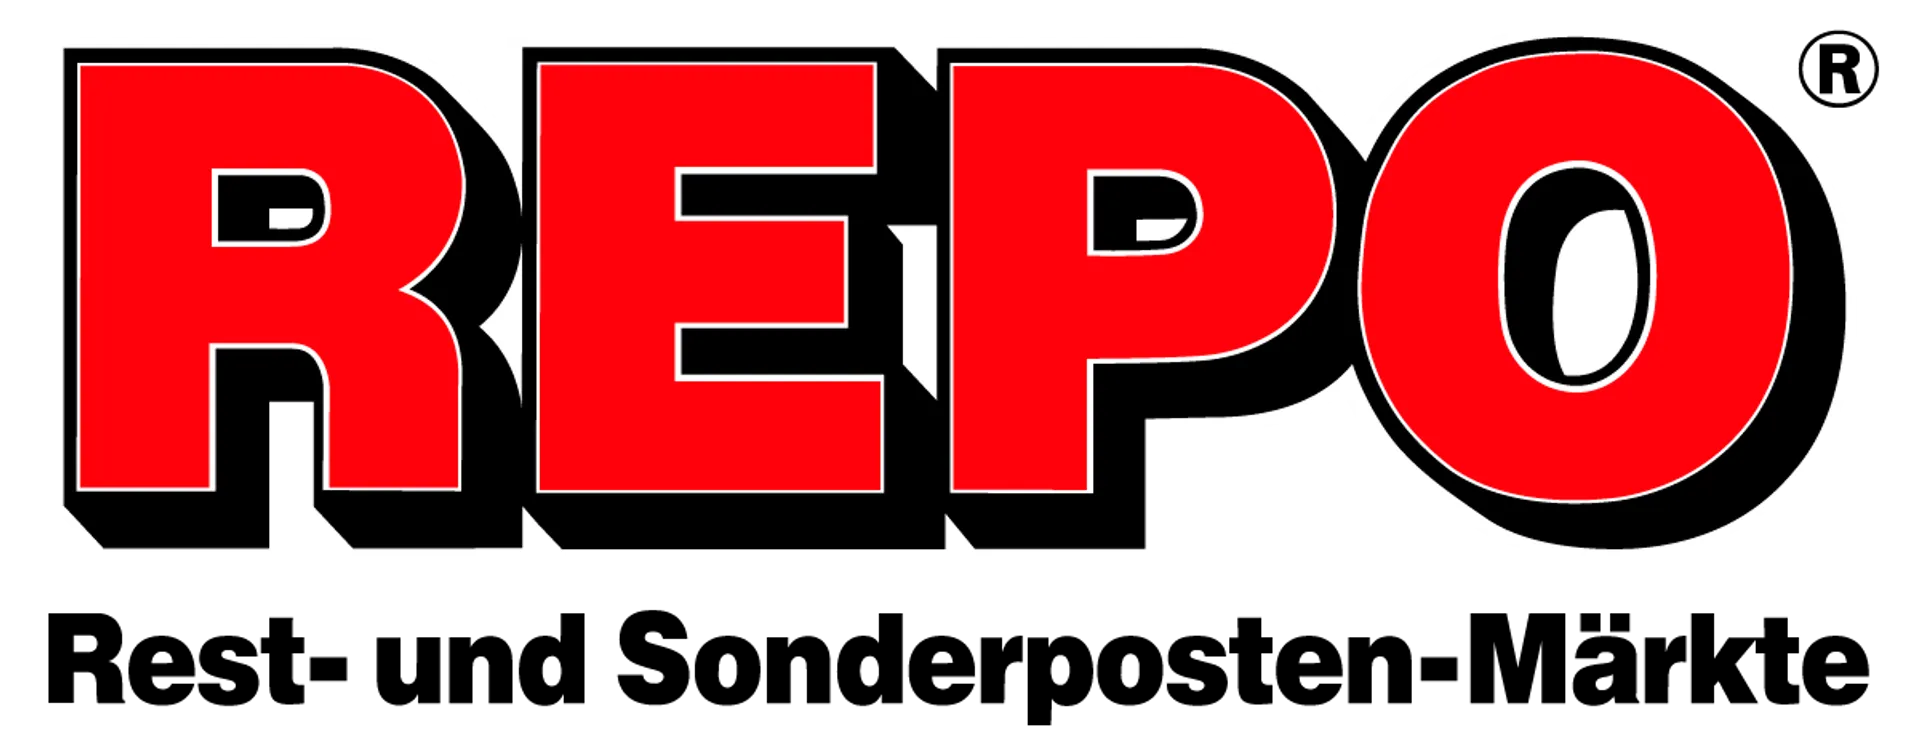 REPO MARKT logo die aktuell Flugblatt